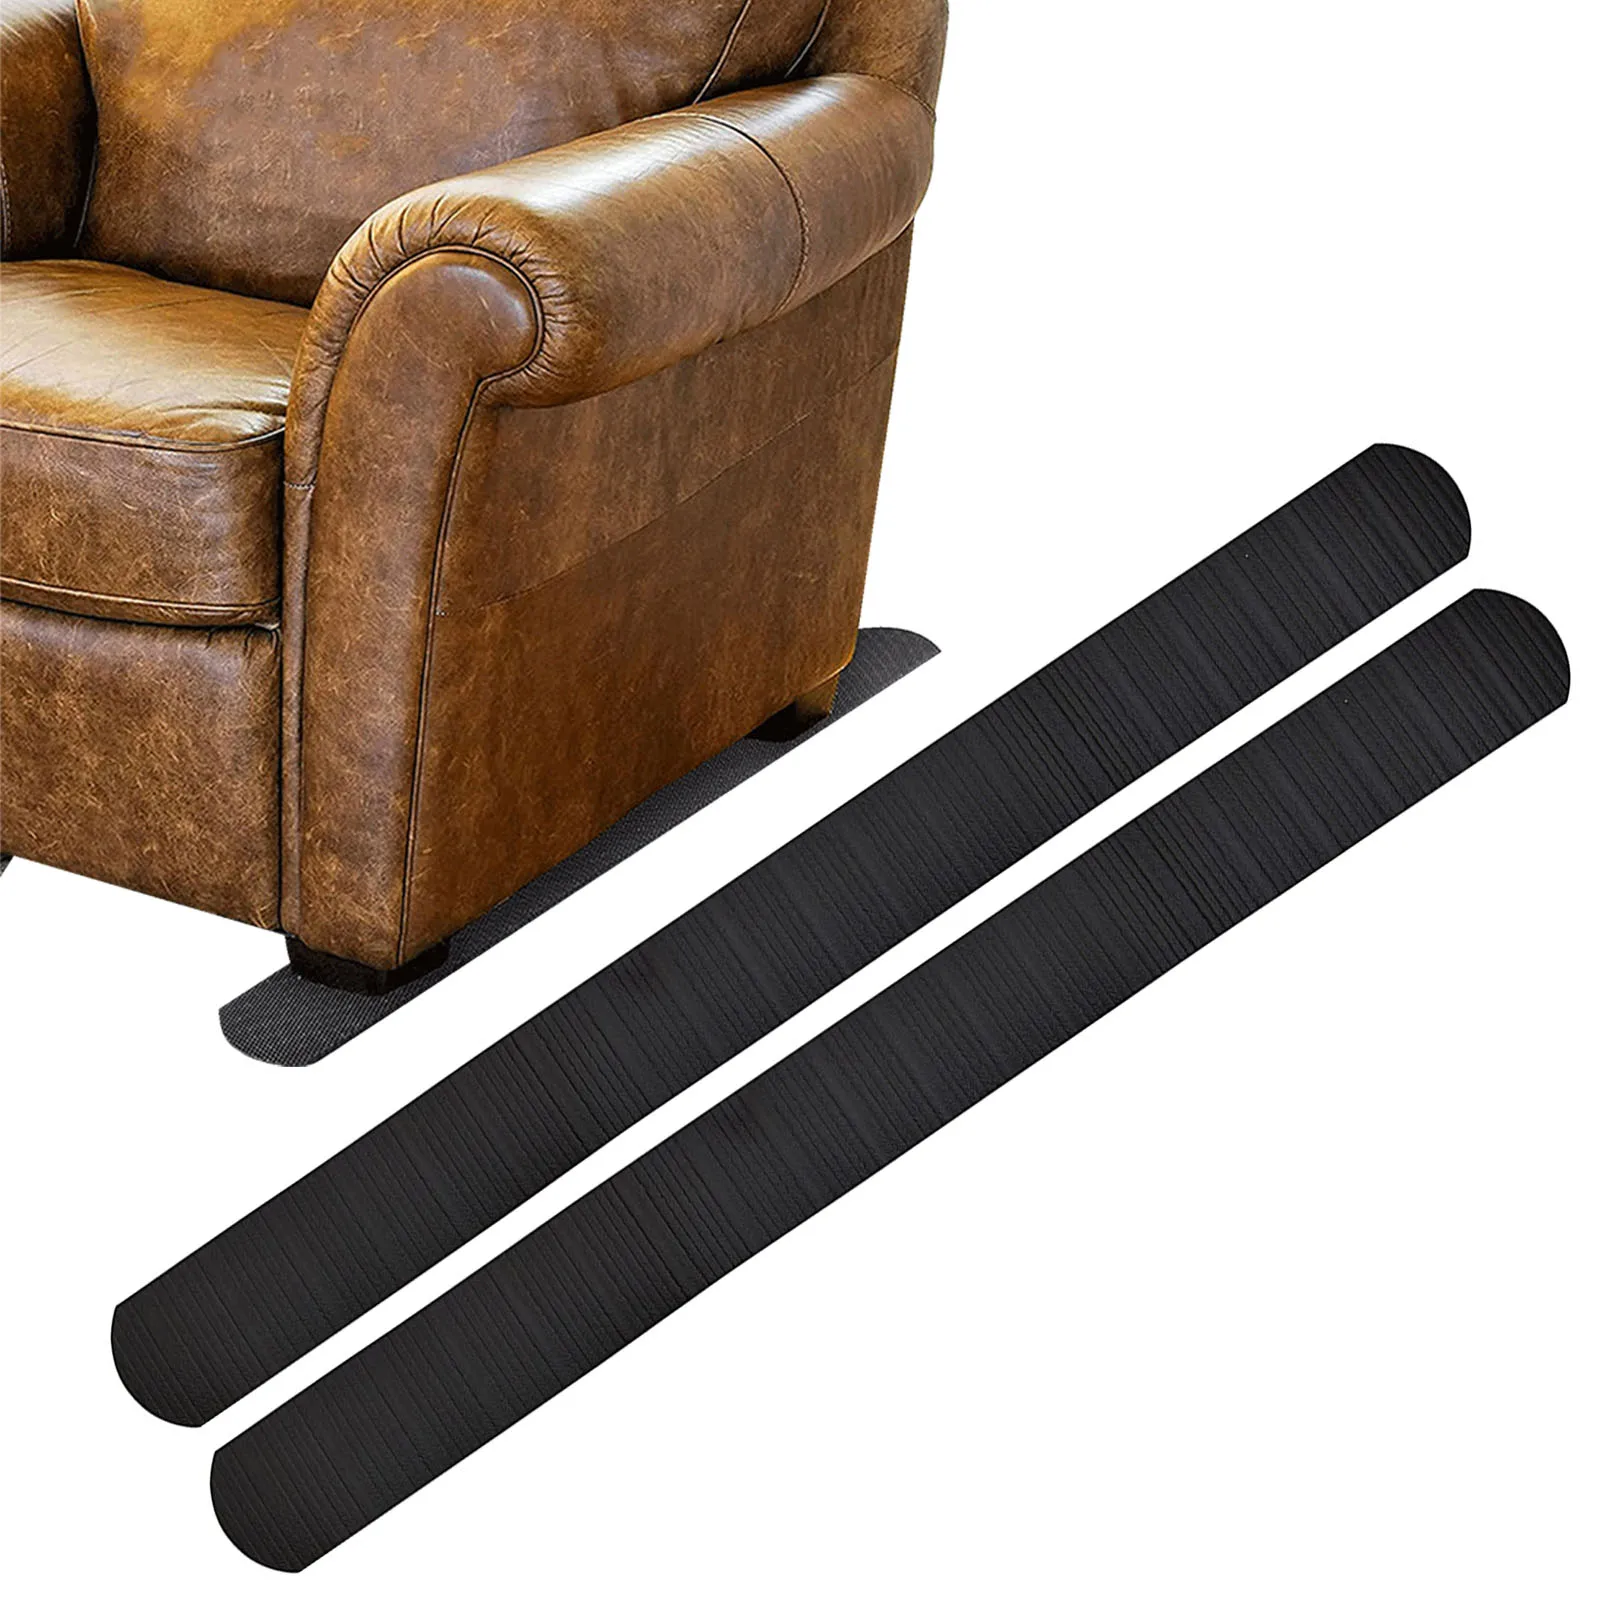 

Резиновые прокладки для мебели, Нескользящие мебельные прокладки для кресла/дивана/кресла, мебельные прокладки для предотвращения